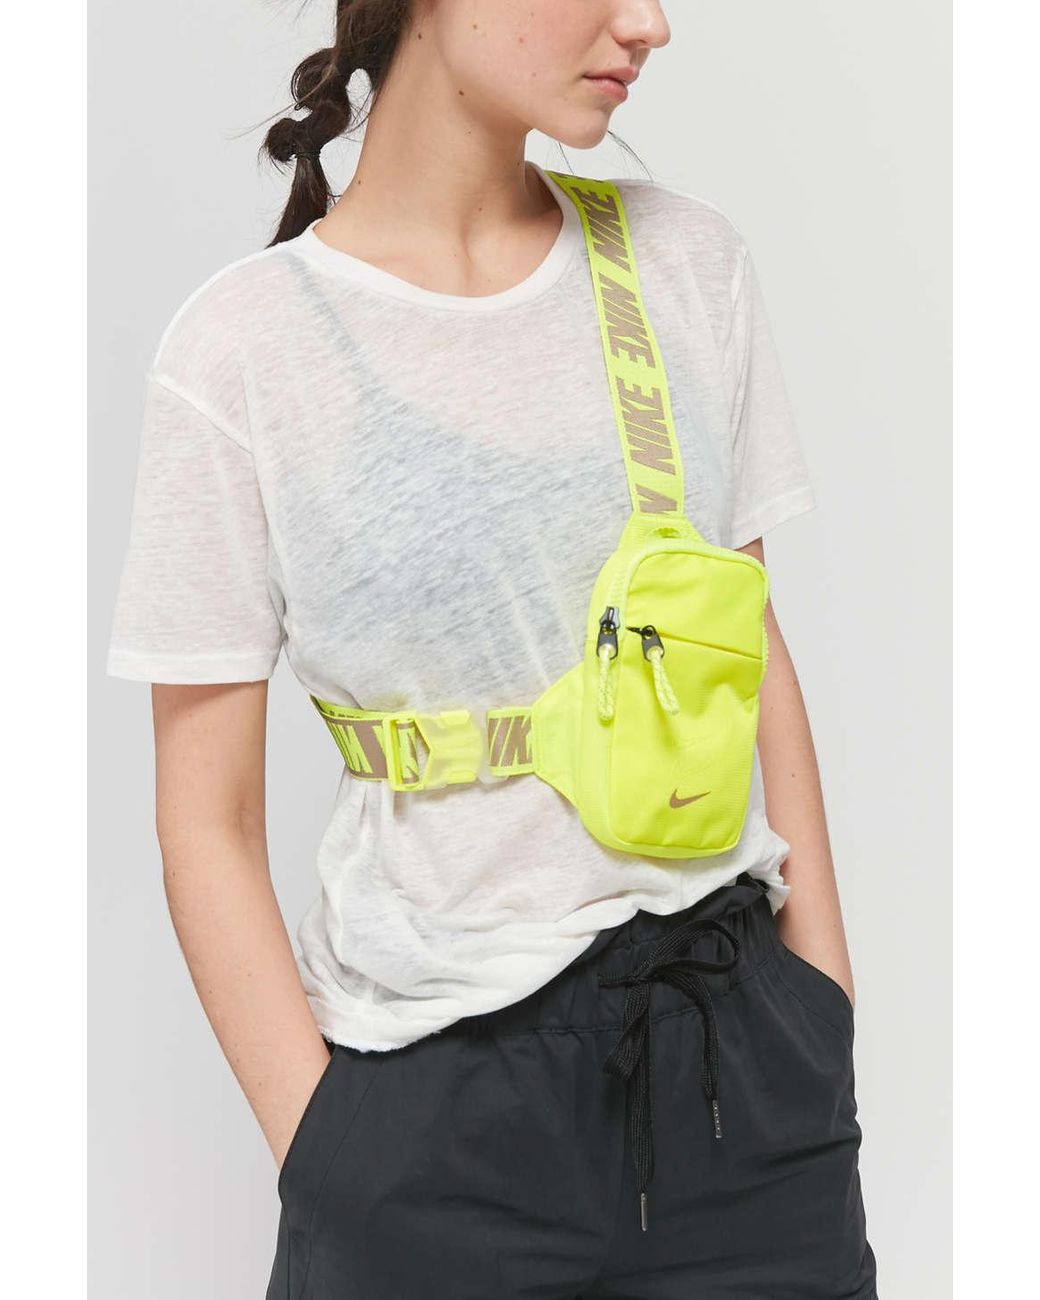 Nike Belt Bag, Women's Fashion, Bags & Wallets, Cross-body Bags on